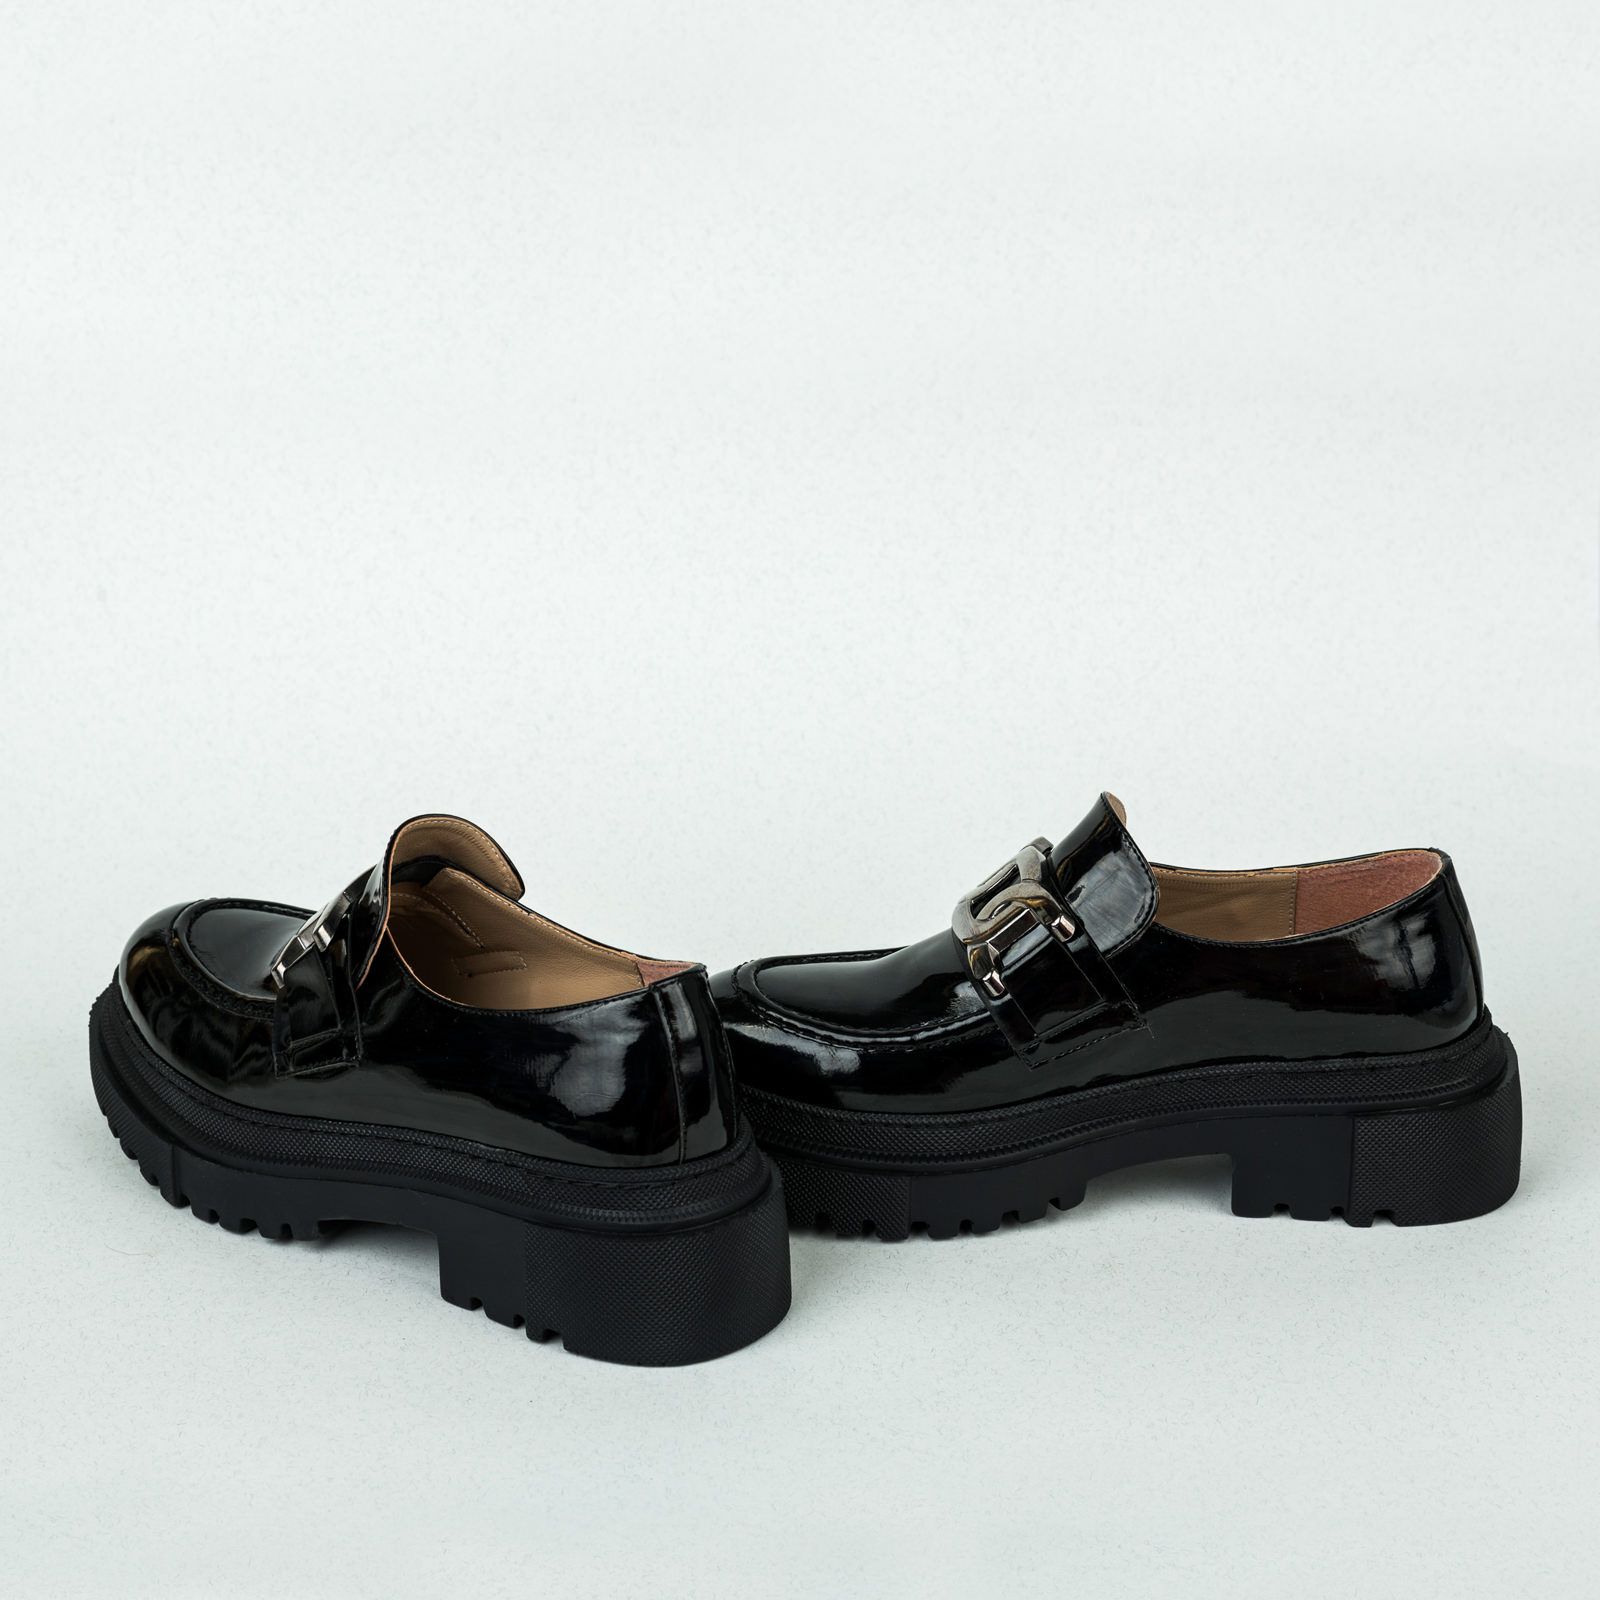 Ženske cipele B066 - CRNA